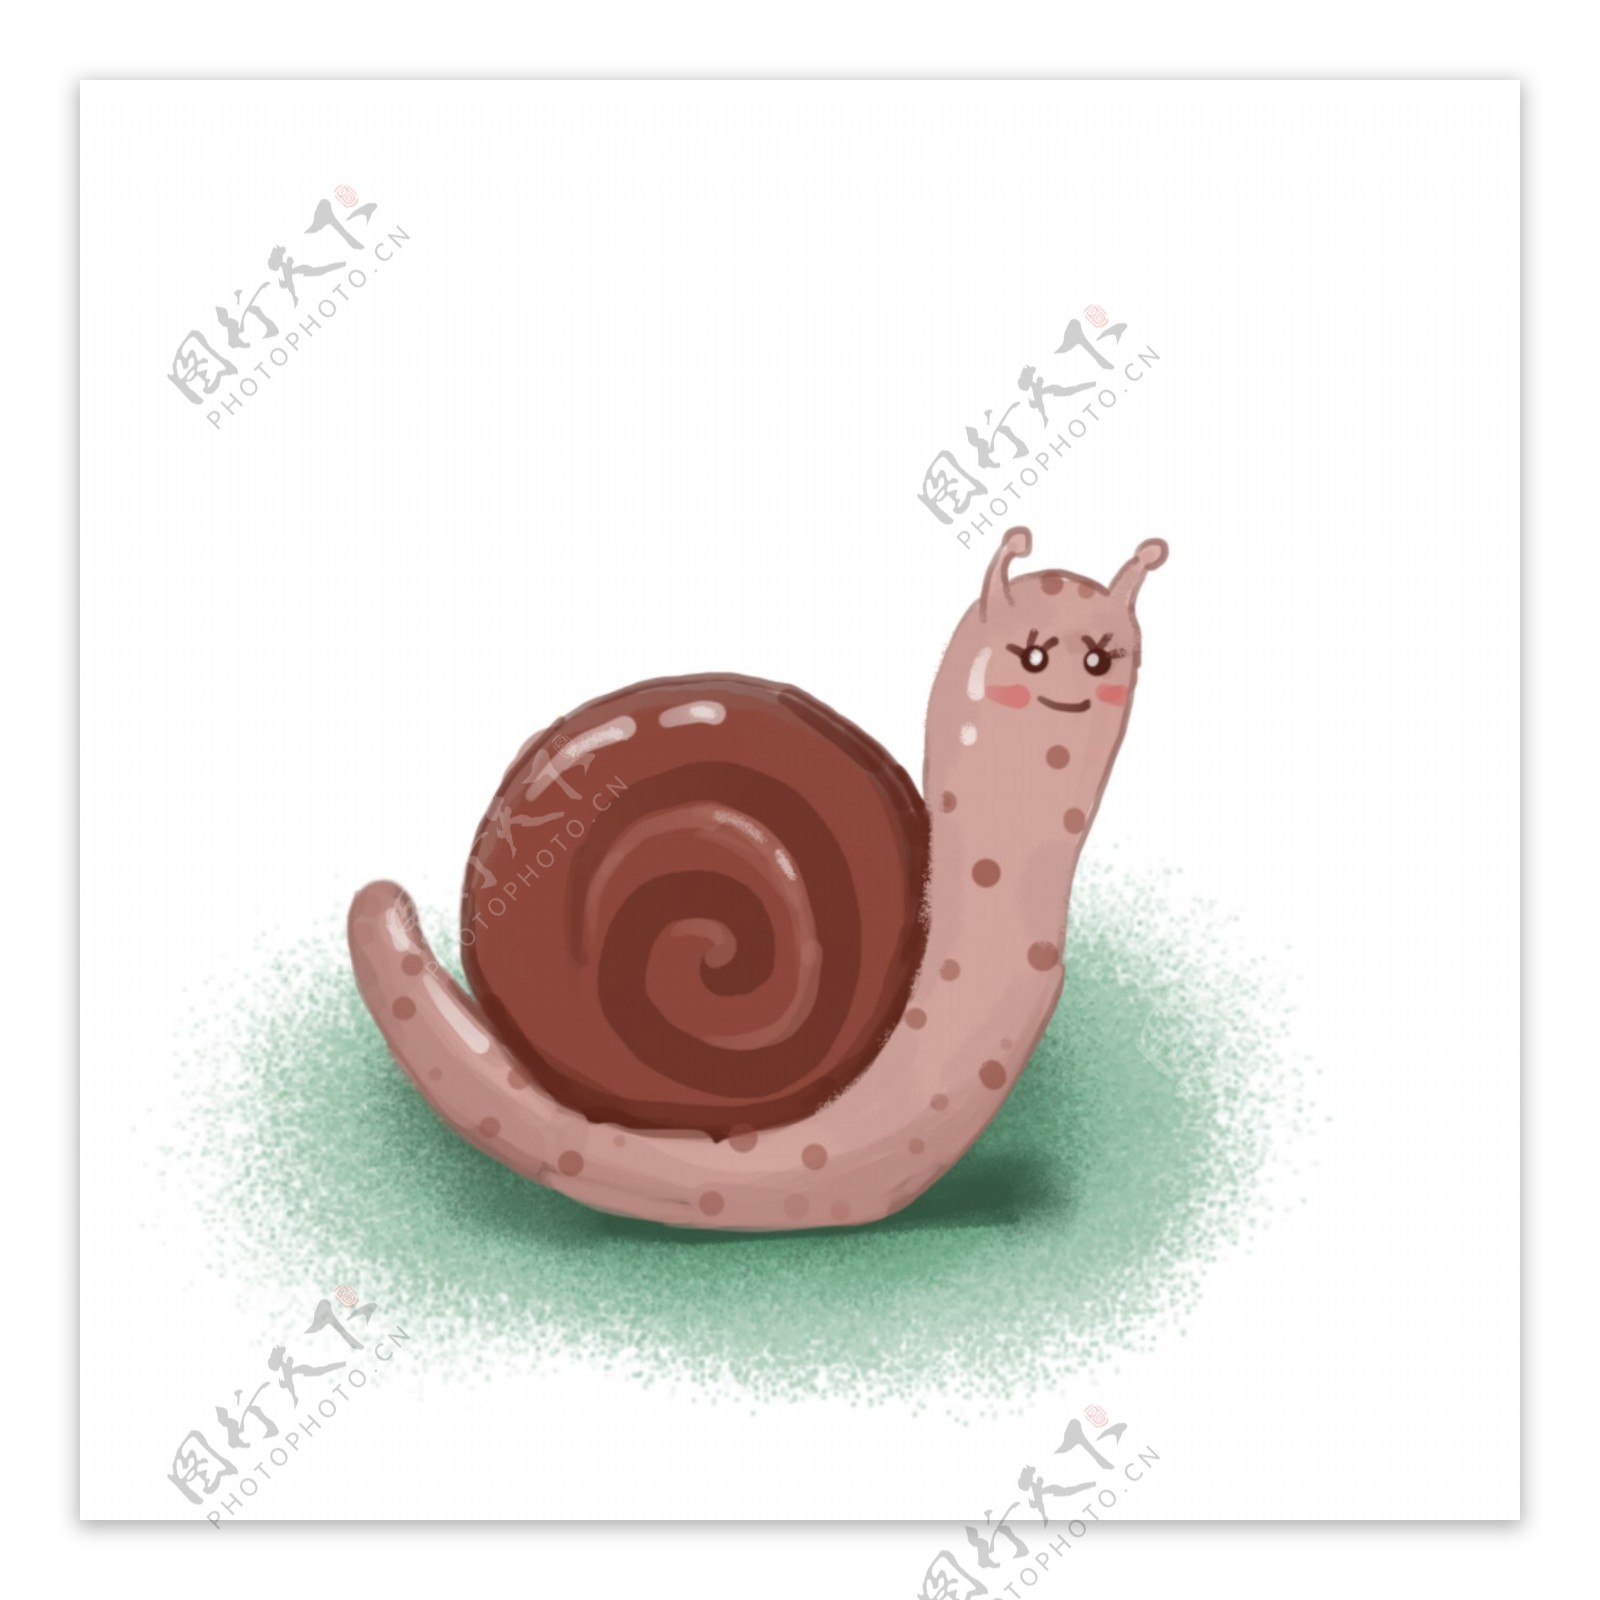 手绘卡通小蜗牛透明底可商用素材